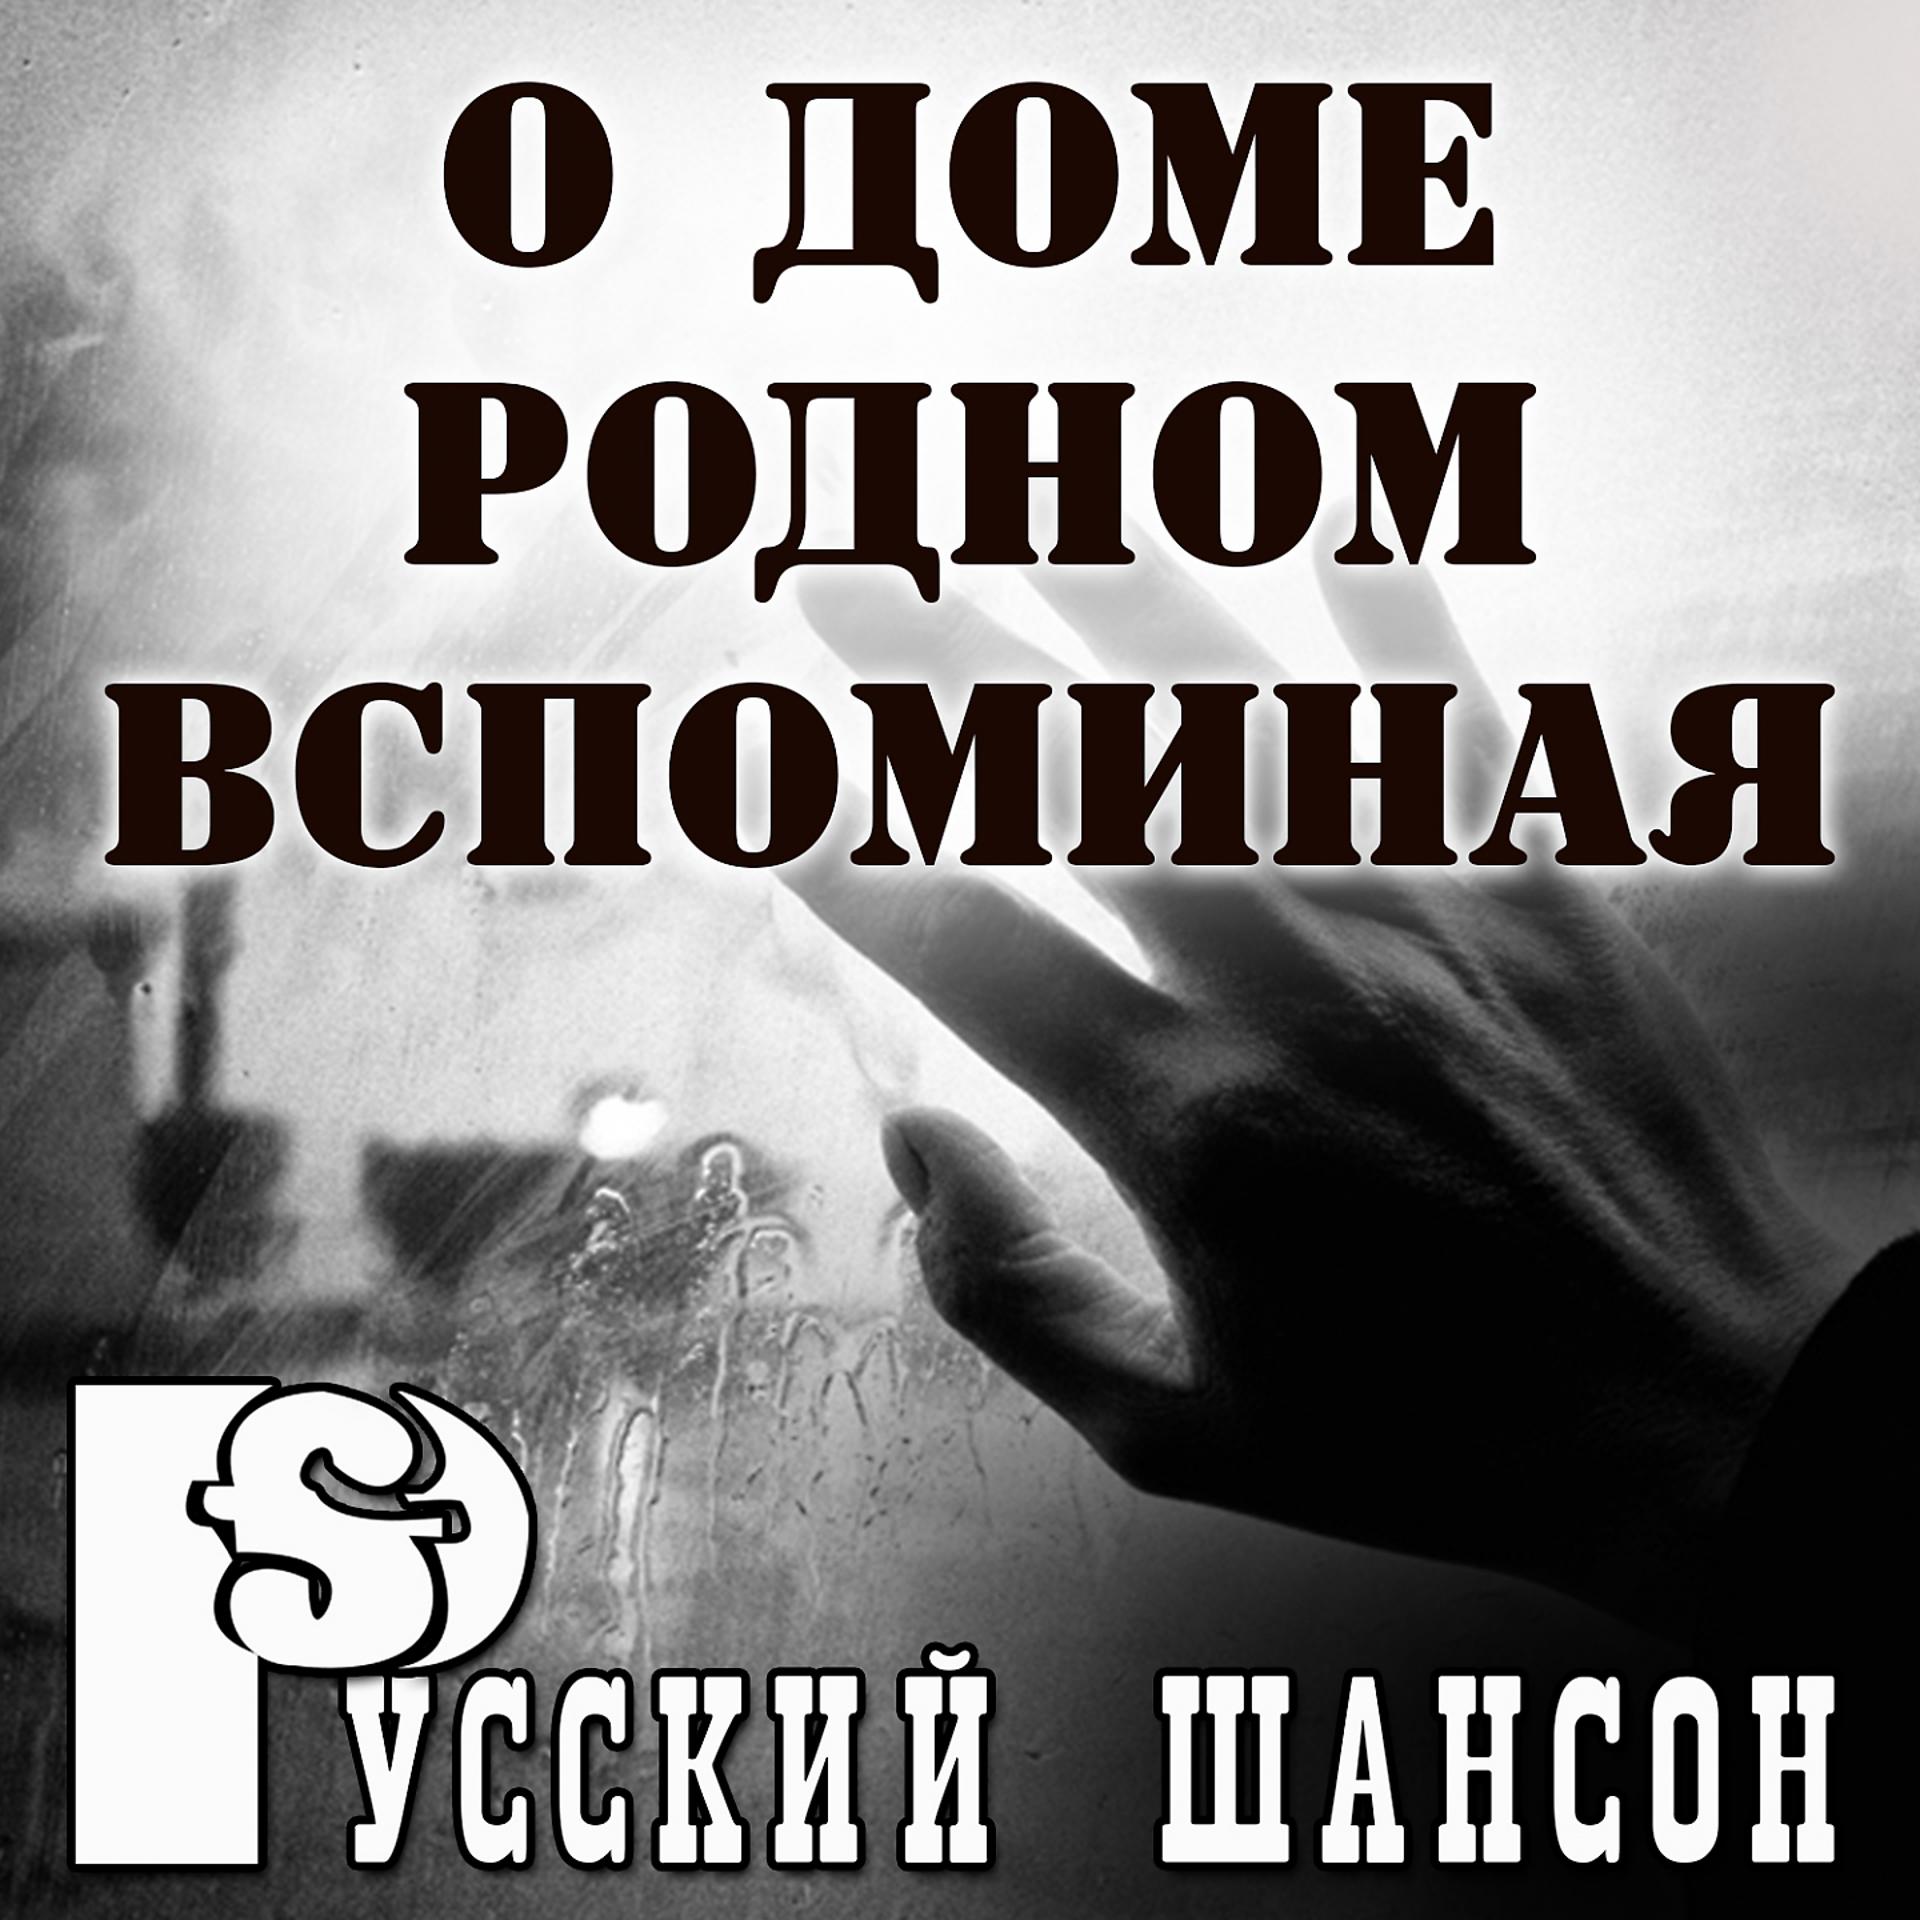 Постер альбома Русский шансон: О доме родном вспоминая